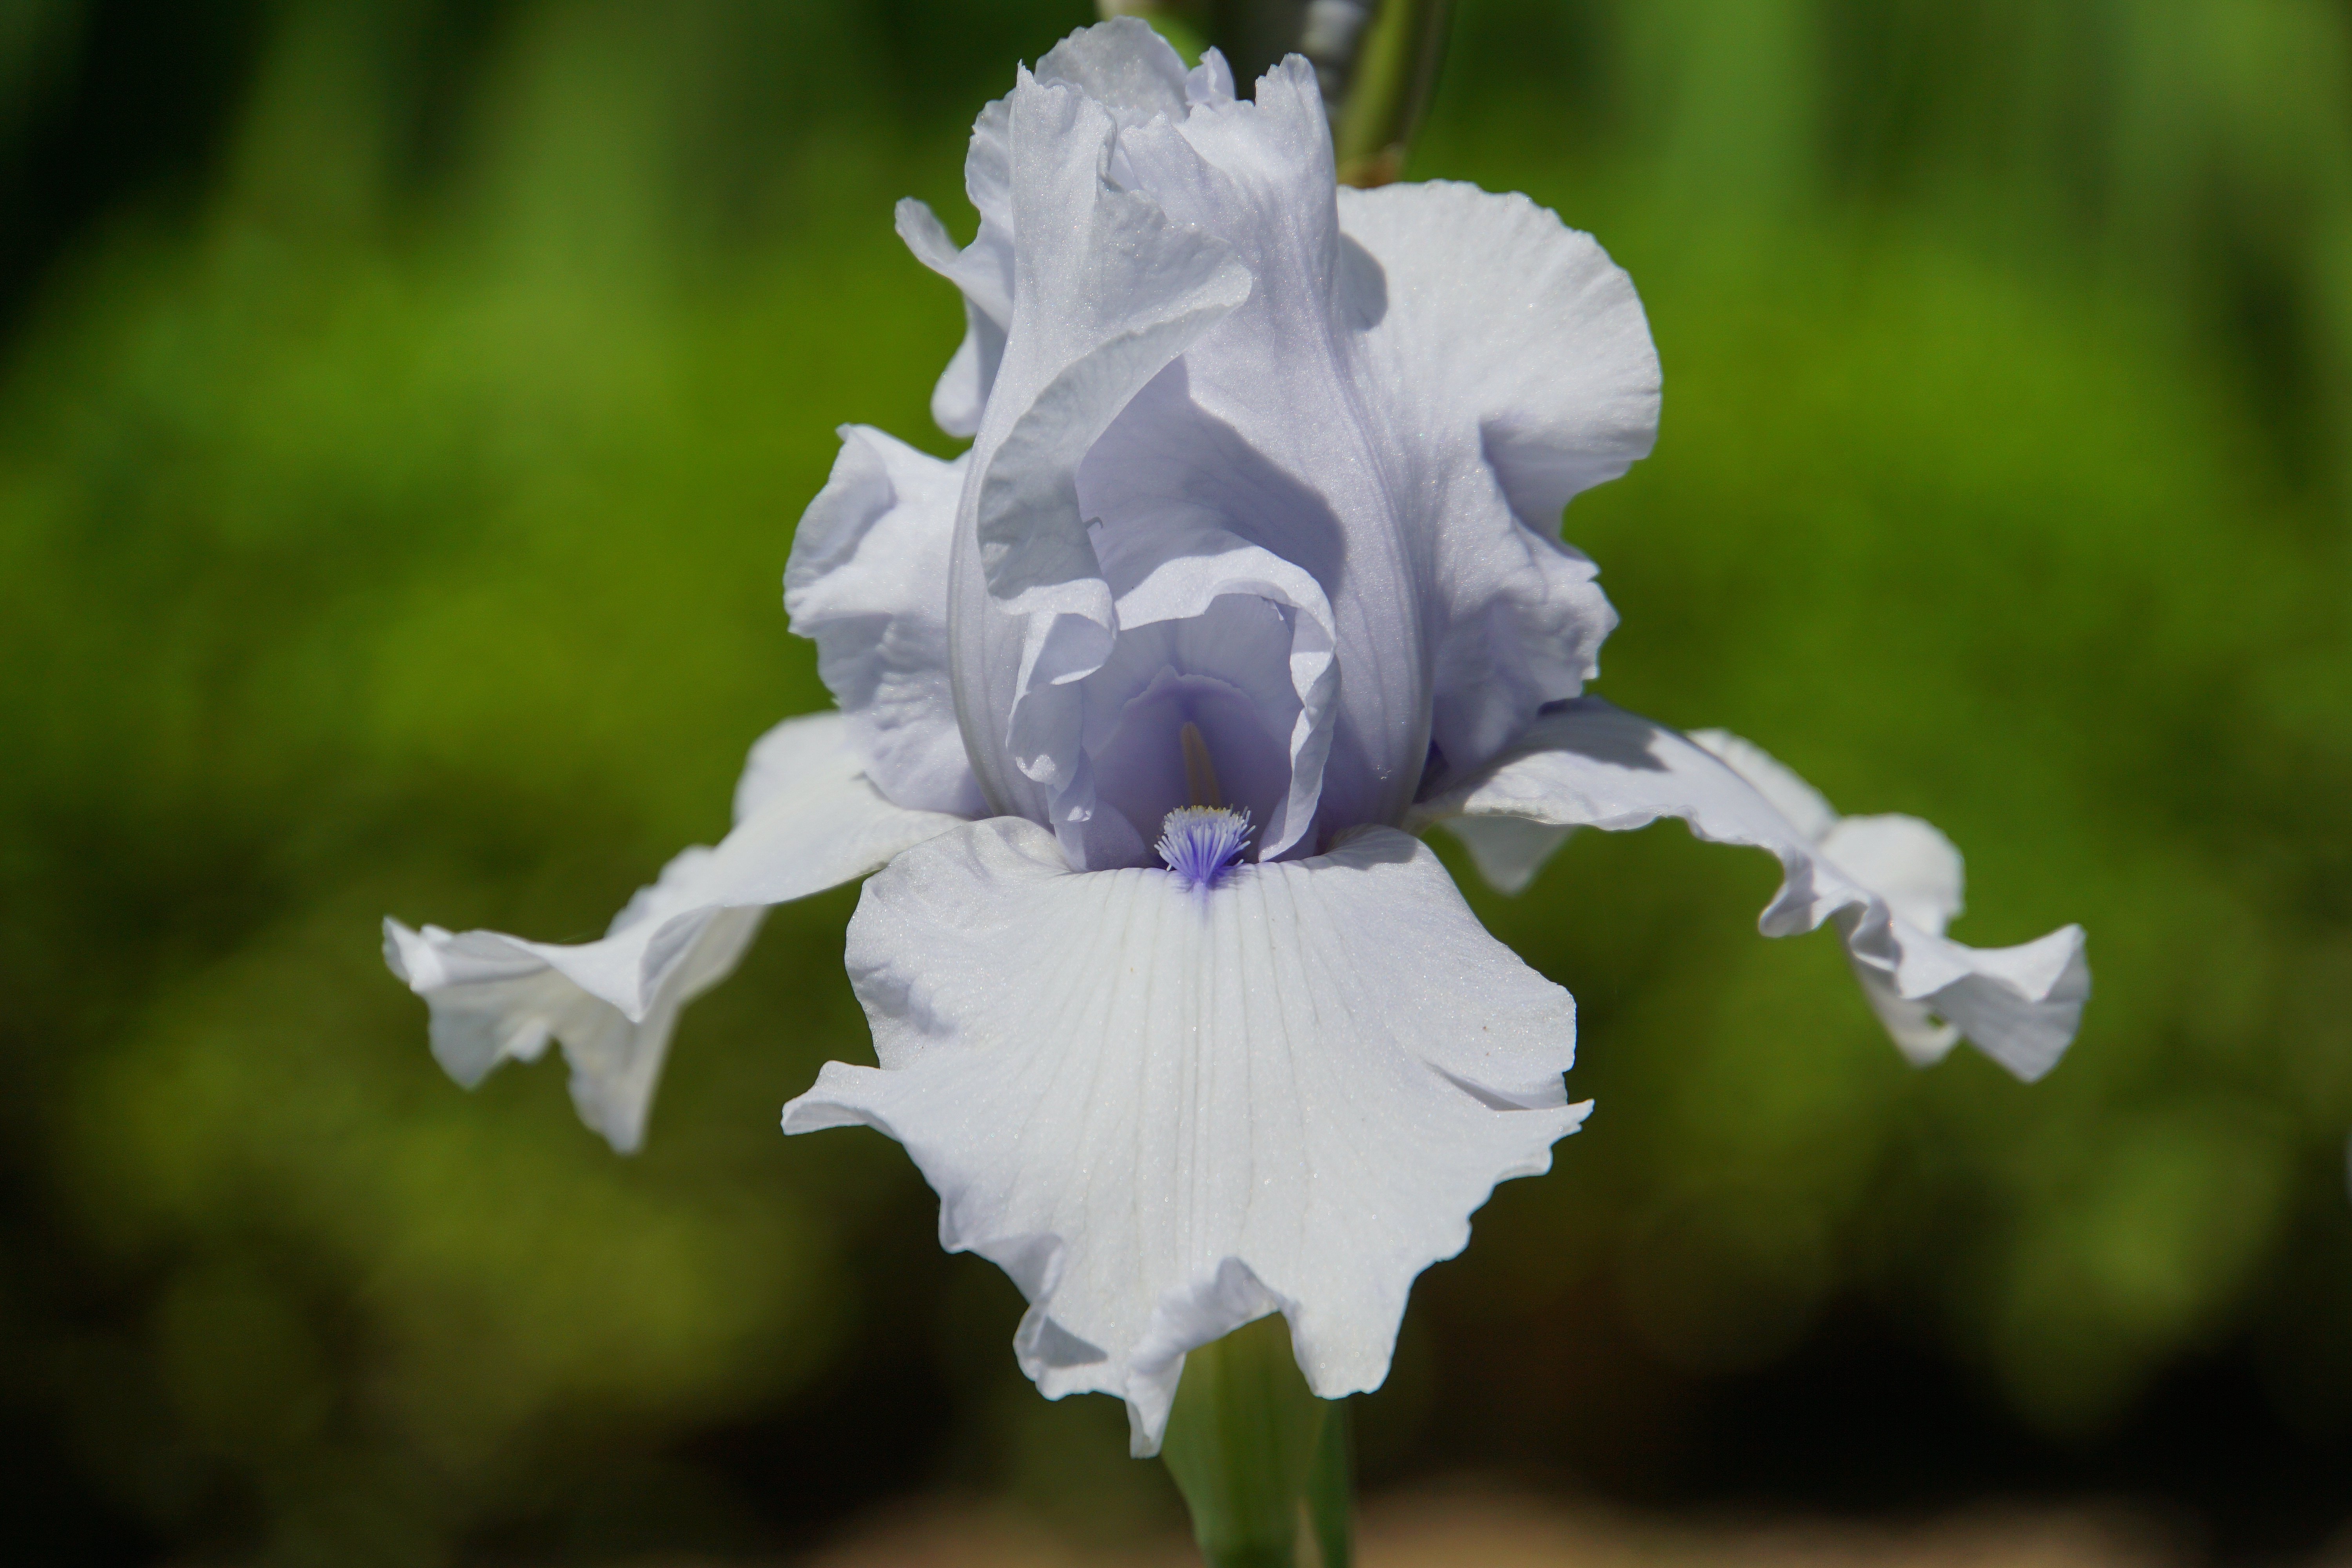 Iris flocculi